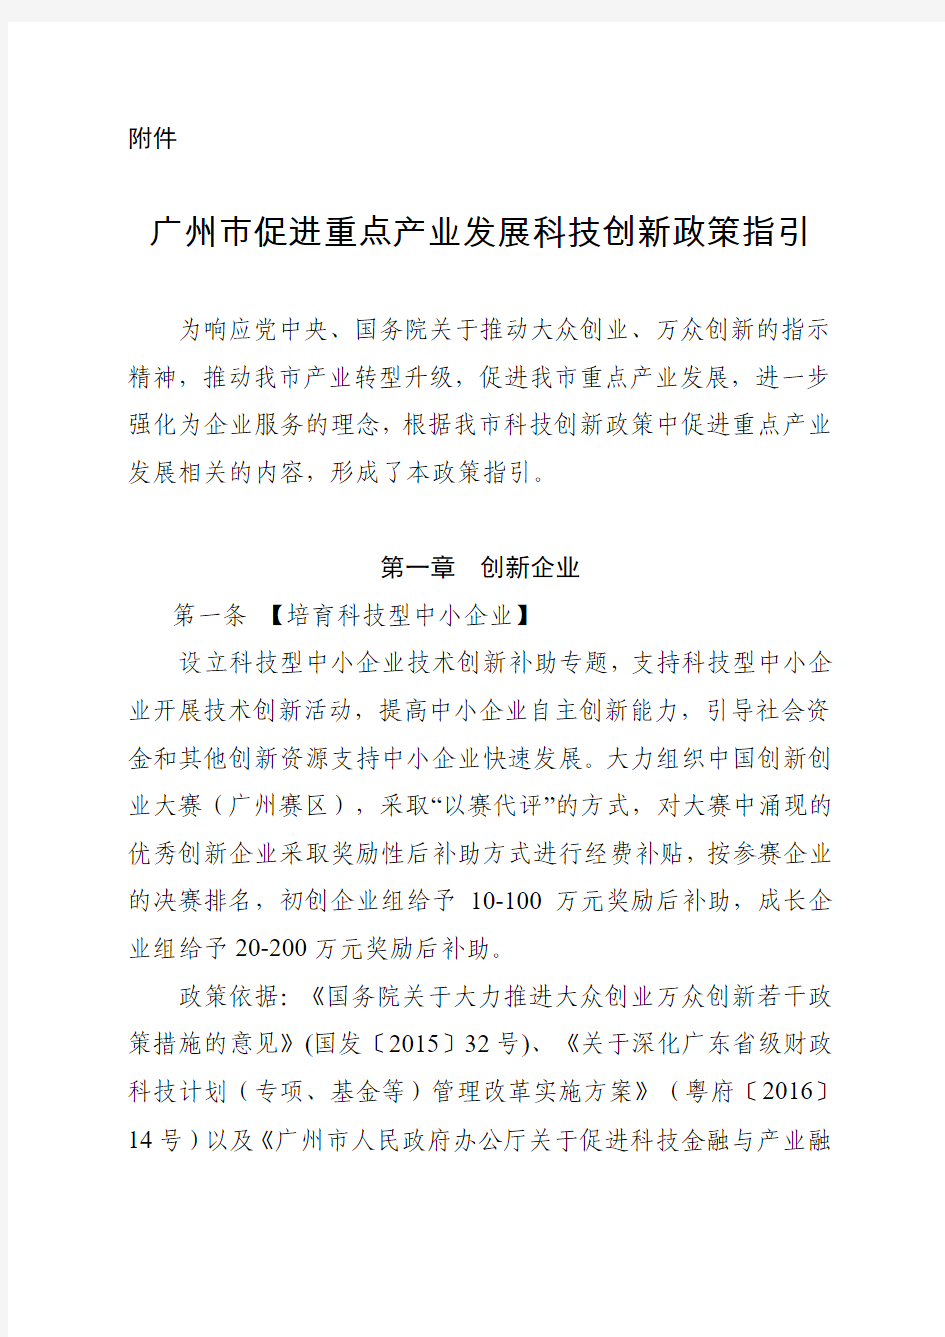 广州市促进重点产业发展科技创新政策指引